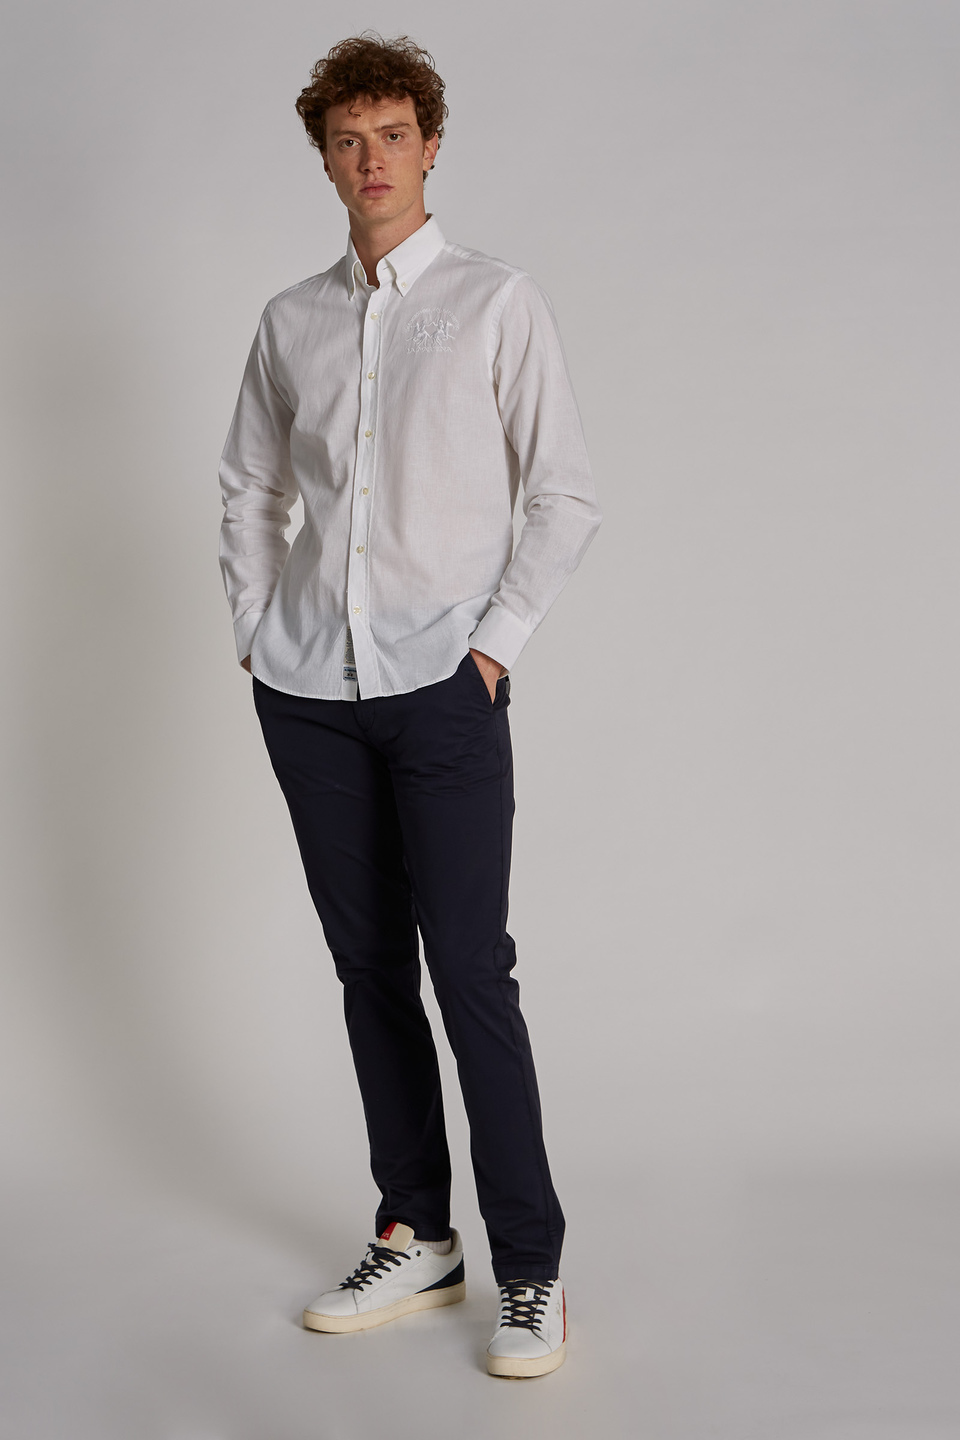 Men's long-sleeved slim-fit shirt | La Martina - Official Online Shop